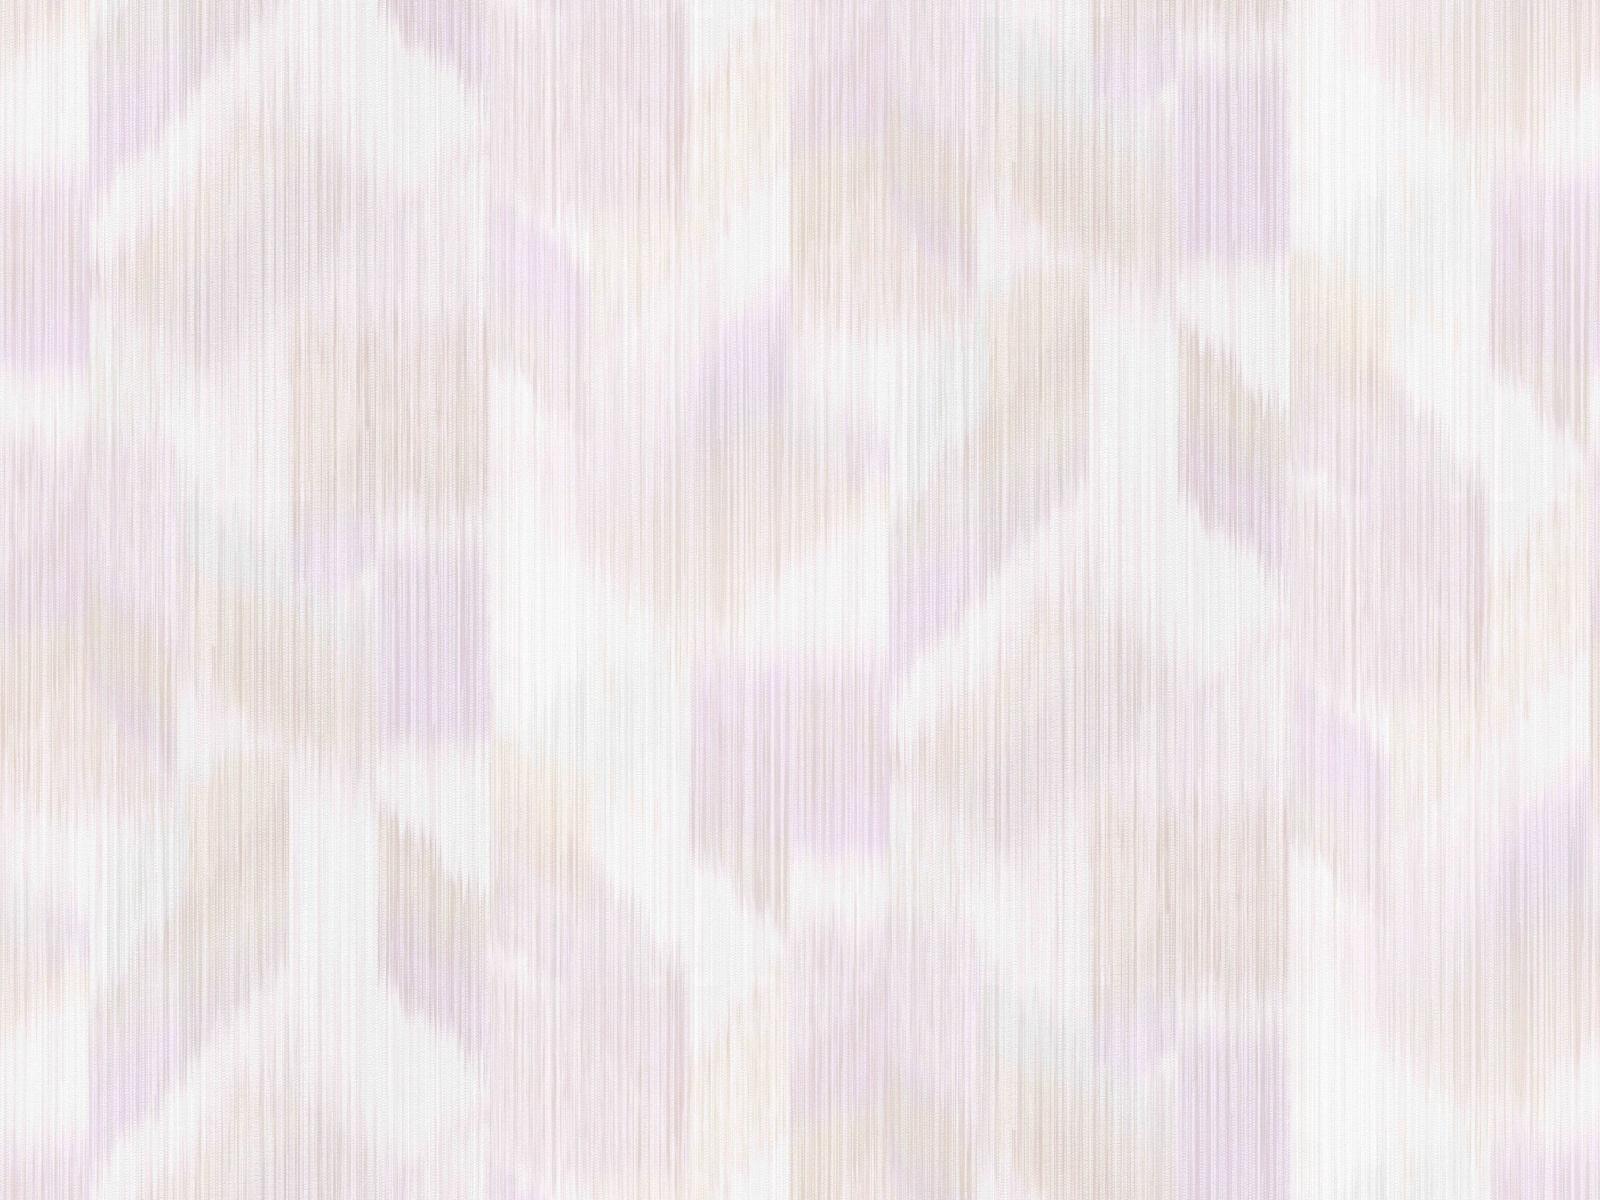 Vliesová tapeta s relaxačným vzorom tón v tóne v ružových farbách, ER-601584